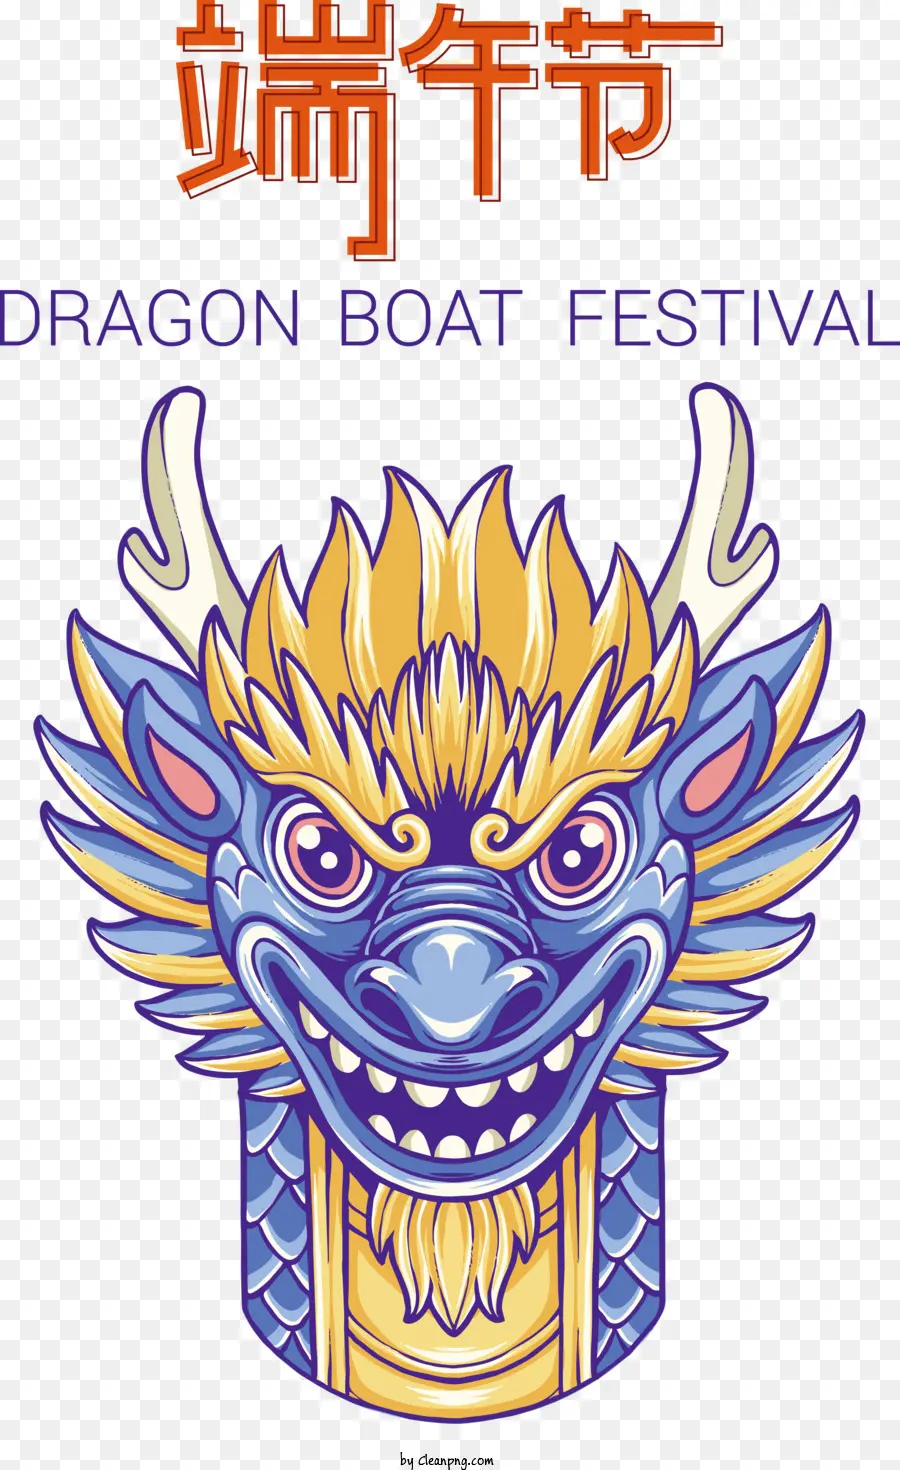 festival della barca del drago - 